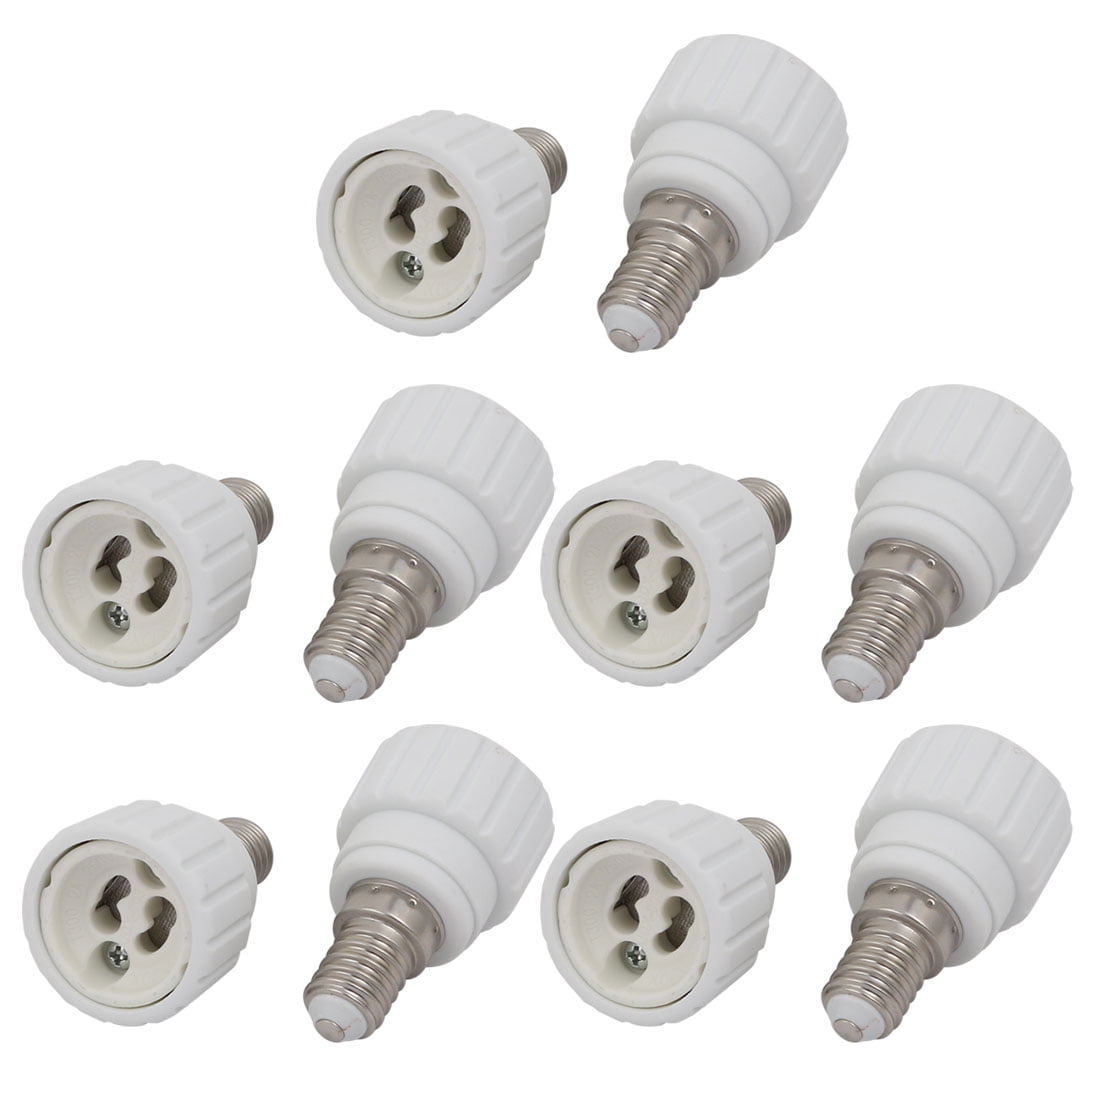 10pcs B22 to E14 Extender Adapter Converter Lamp Bulb Socket Holder White